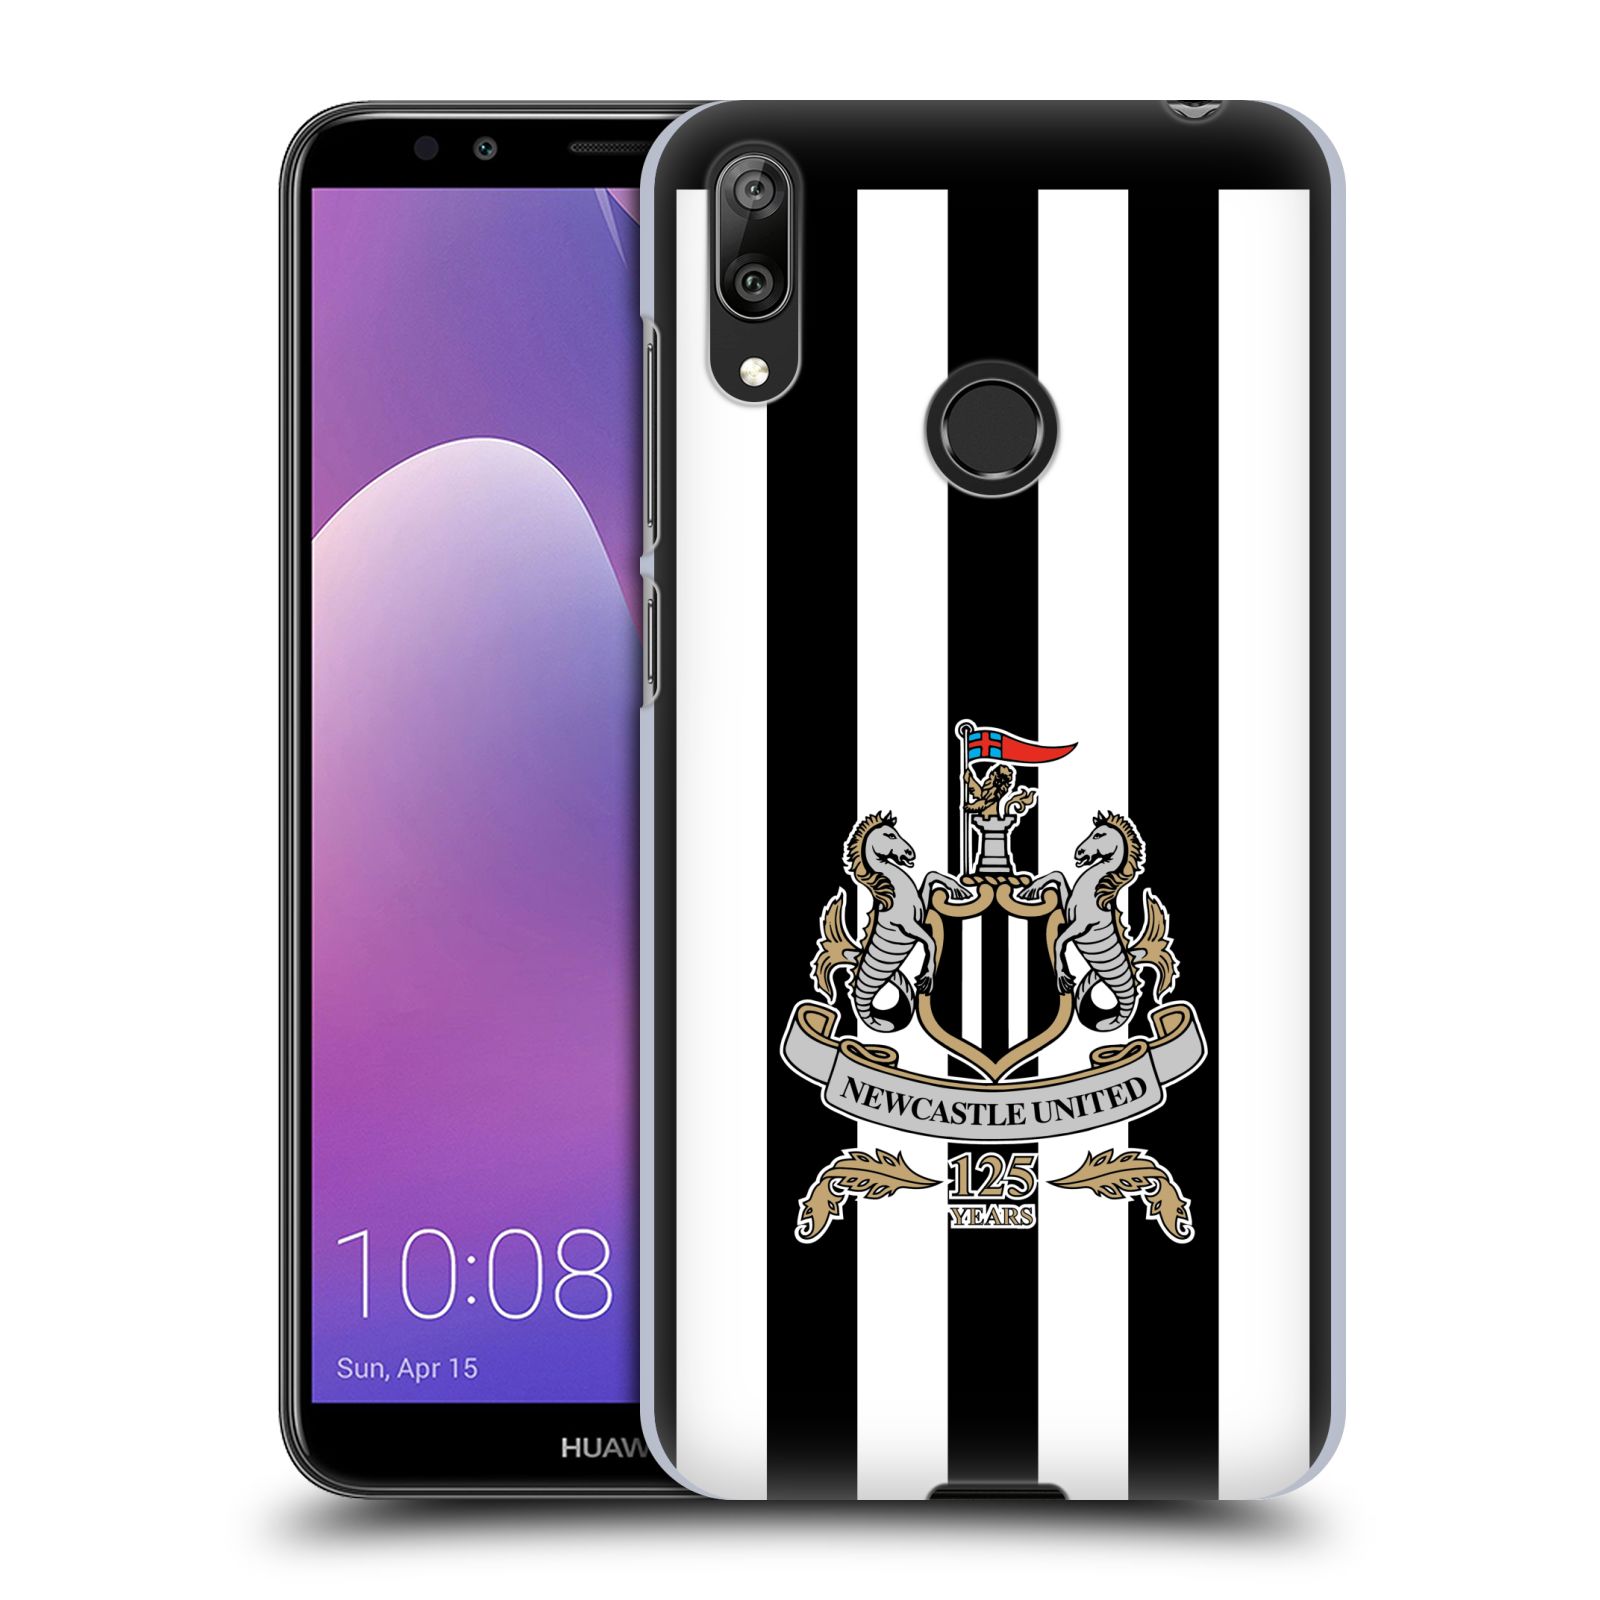 Pouzdro na mobil Huawei Y7 2019 - Head Case - Fotbalový klub Newcastle United FC pruhovaný vzor velký znak